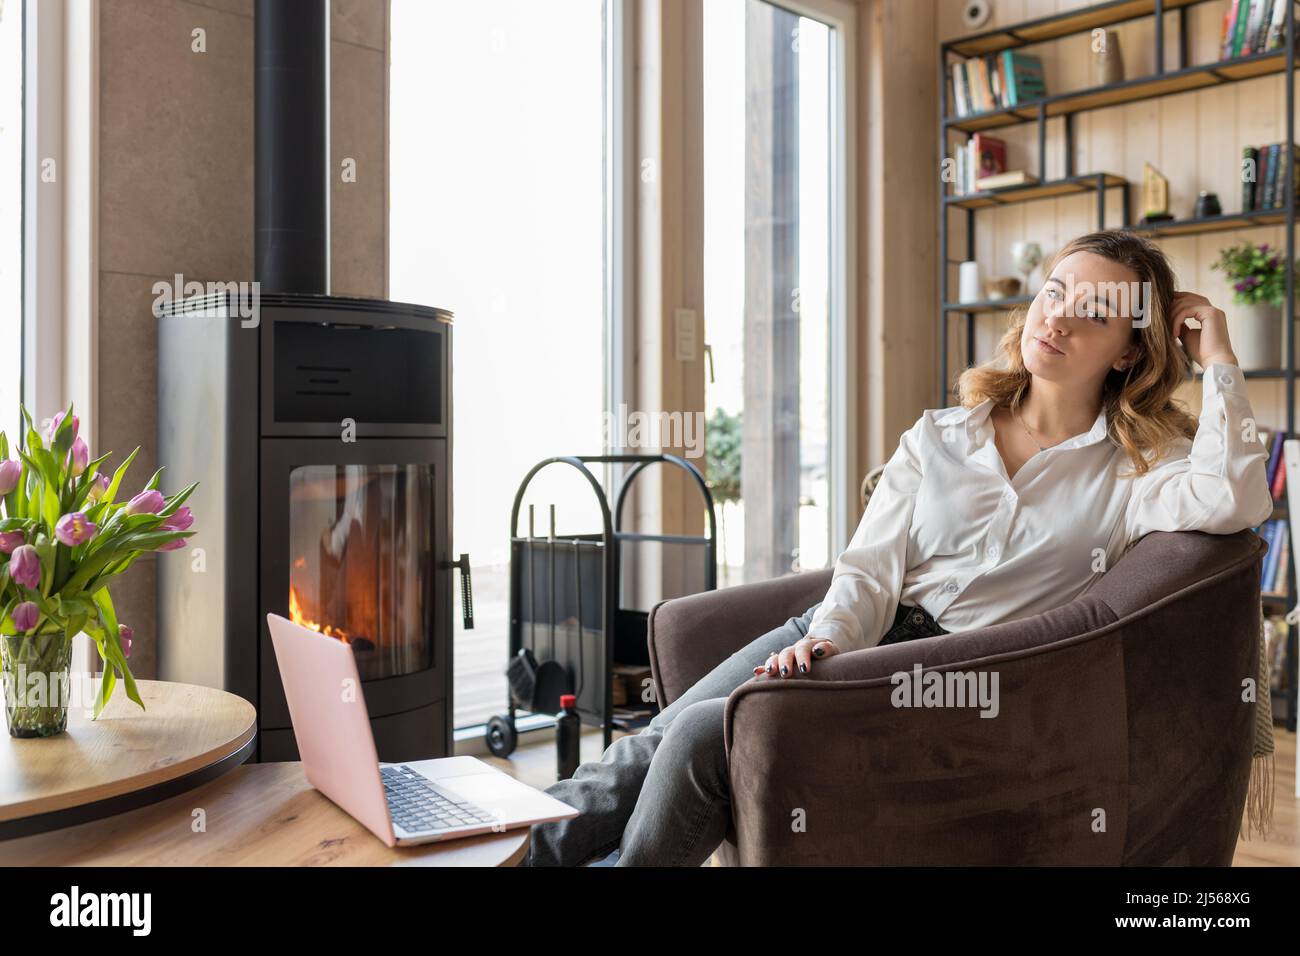 Porträt einer glücklichen Frau mit Laptop, die in legerer Kleidung neben Fenster und Kamin auf einem weichen Sessel sitzt. Wohnzimmer in elegantem Design mit Ästhetik Stockfoto